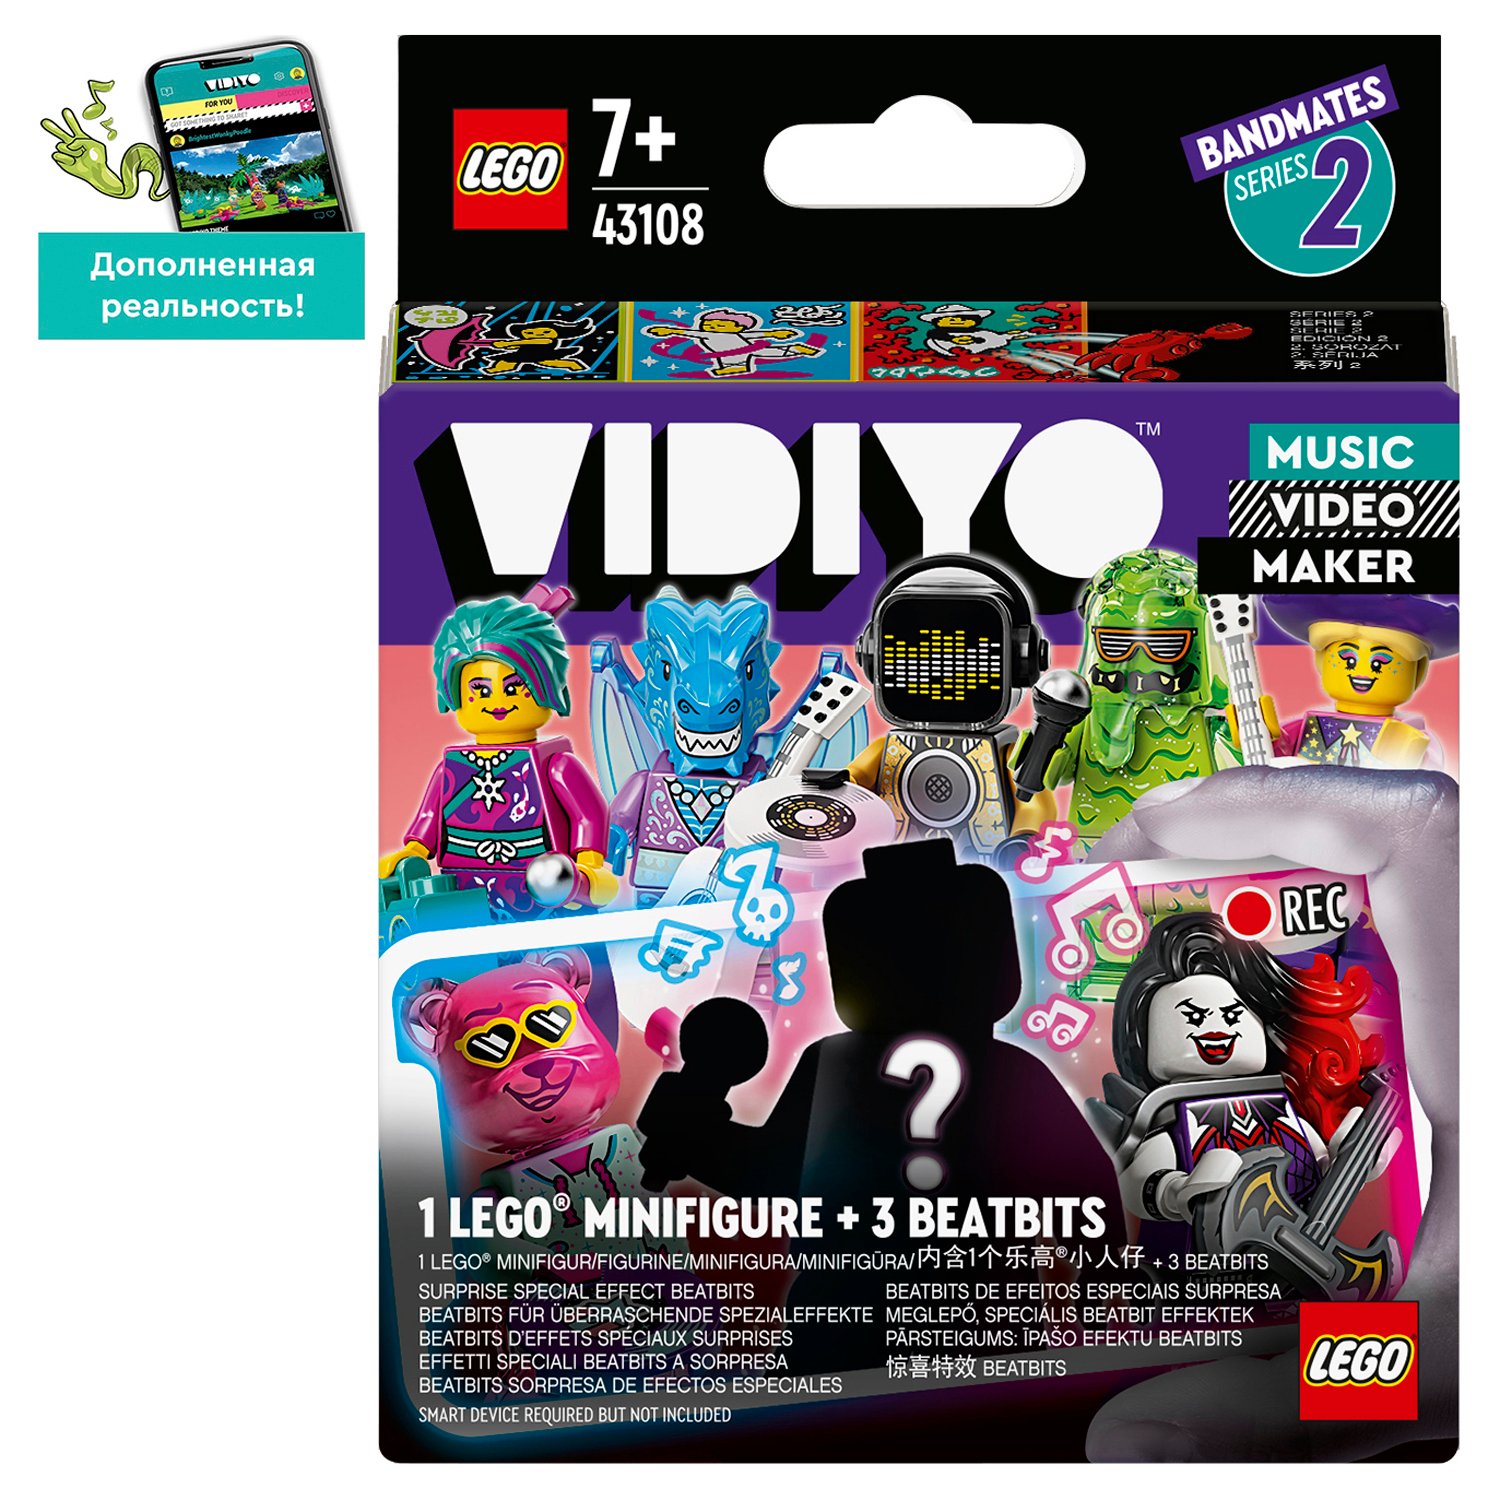 Конструктор LEGO Vidiyo Бэндмейты в непрозрачной упаковке (Сюрприз) 43108 - фото 2